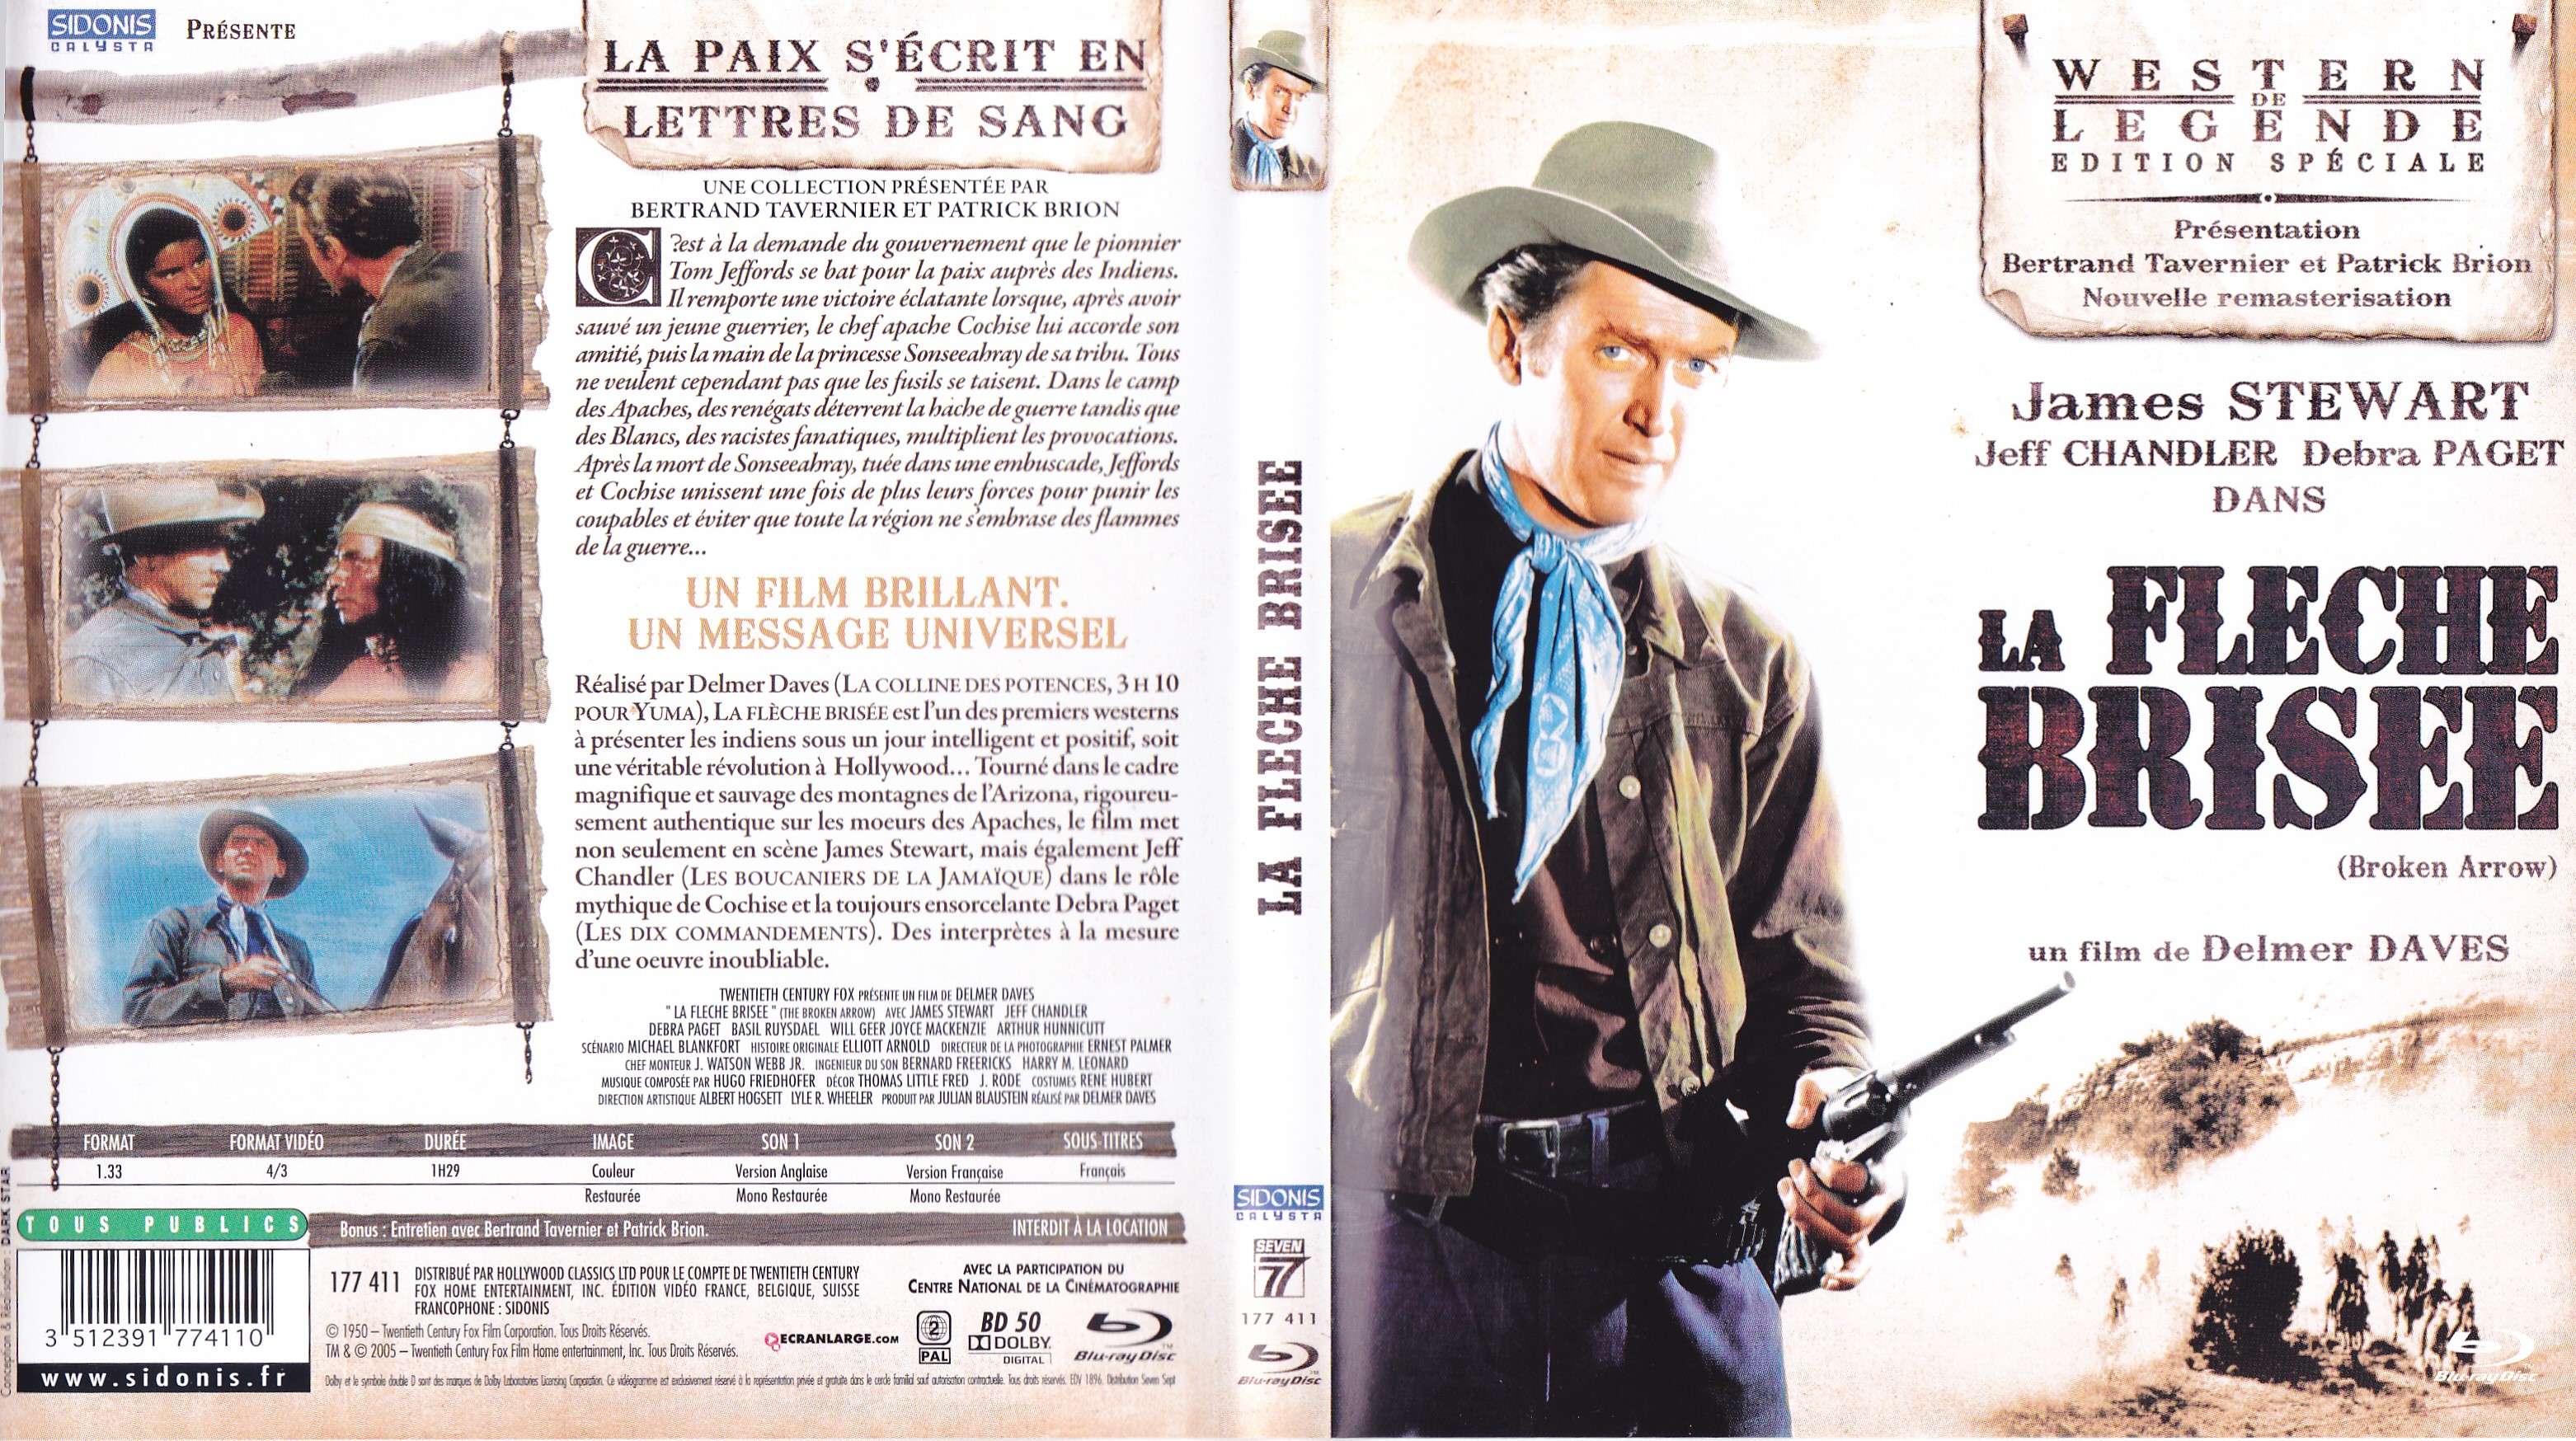 Jaquette DVD La fleche brise (BLU-RAY)